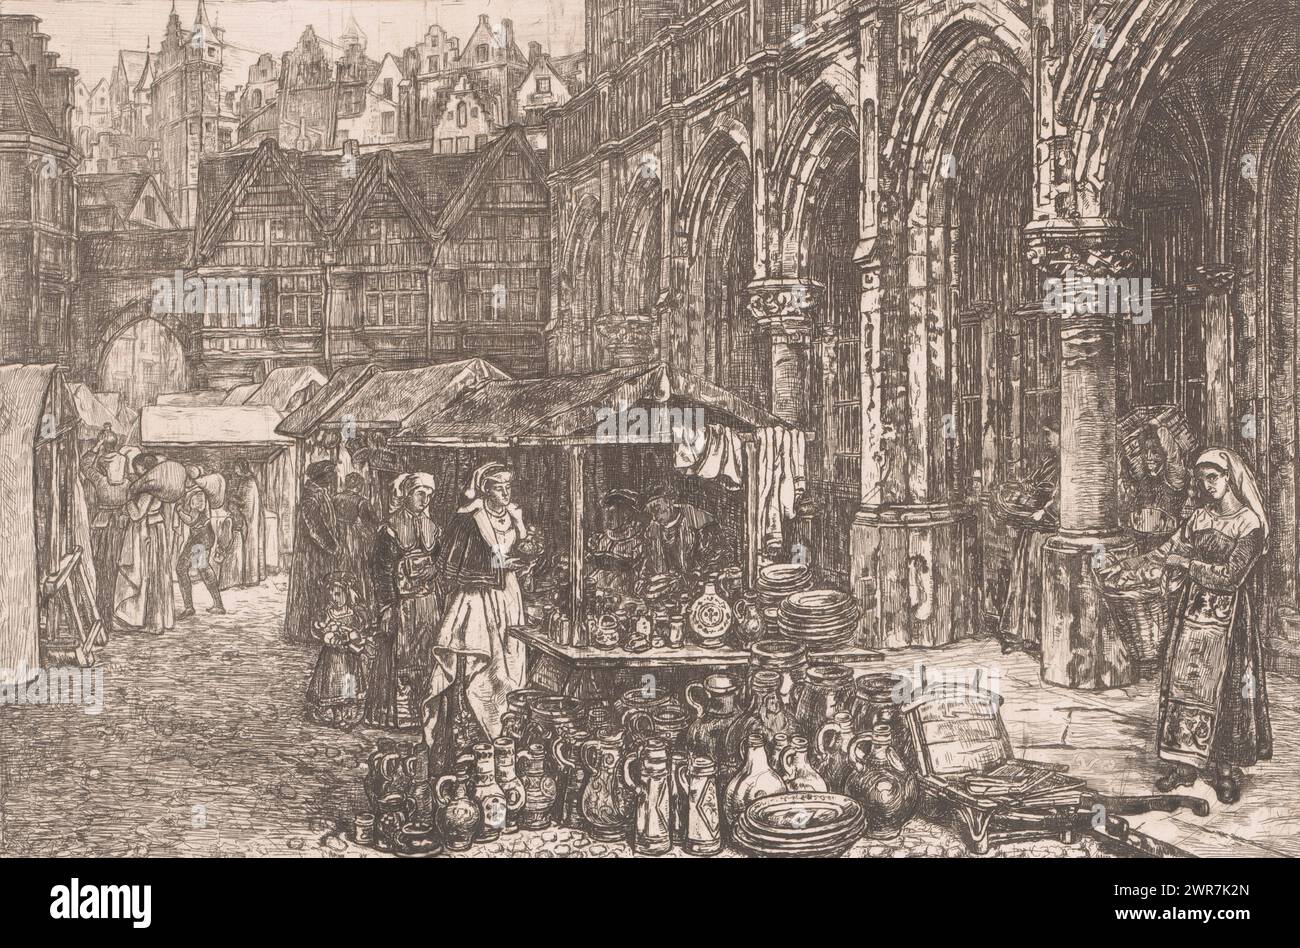 Marché médiéval avec stalle de céramique, imprimeur : Théodore Joseph Cleynhens, 1851 - 1909, papier, gravure, hauteur 276 mm, largeur 352 mm, impression Banque D'Images